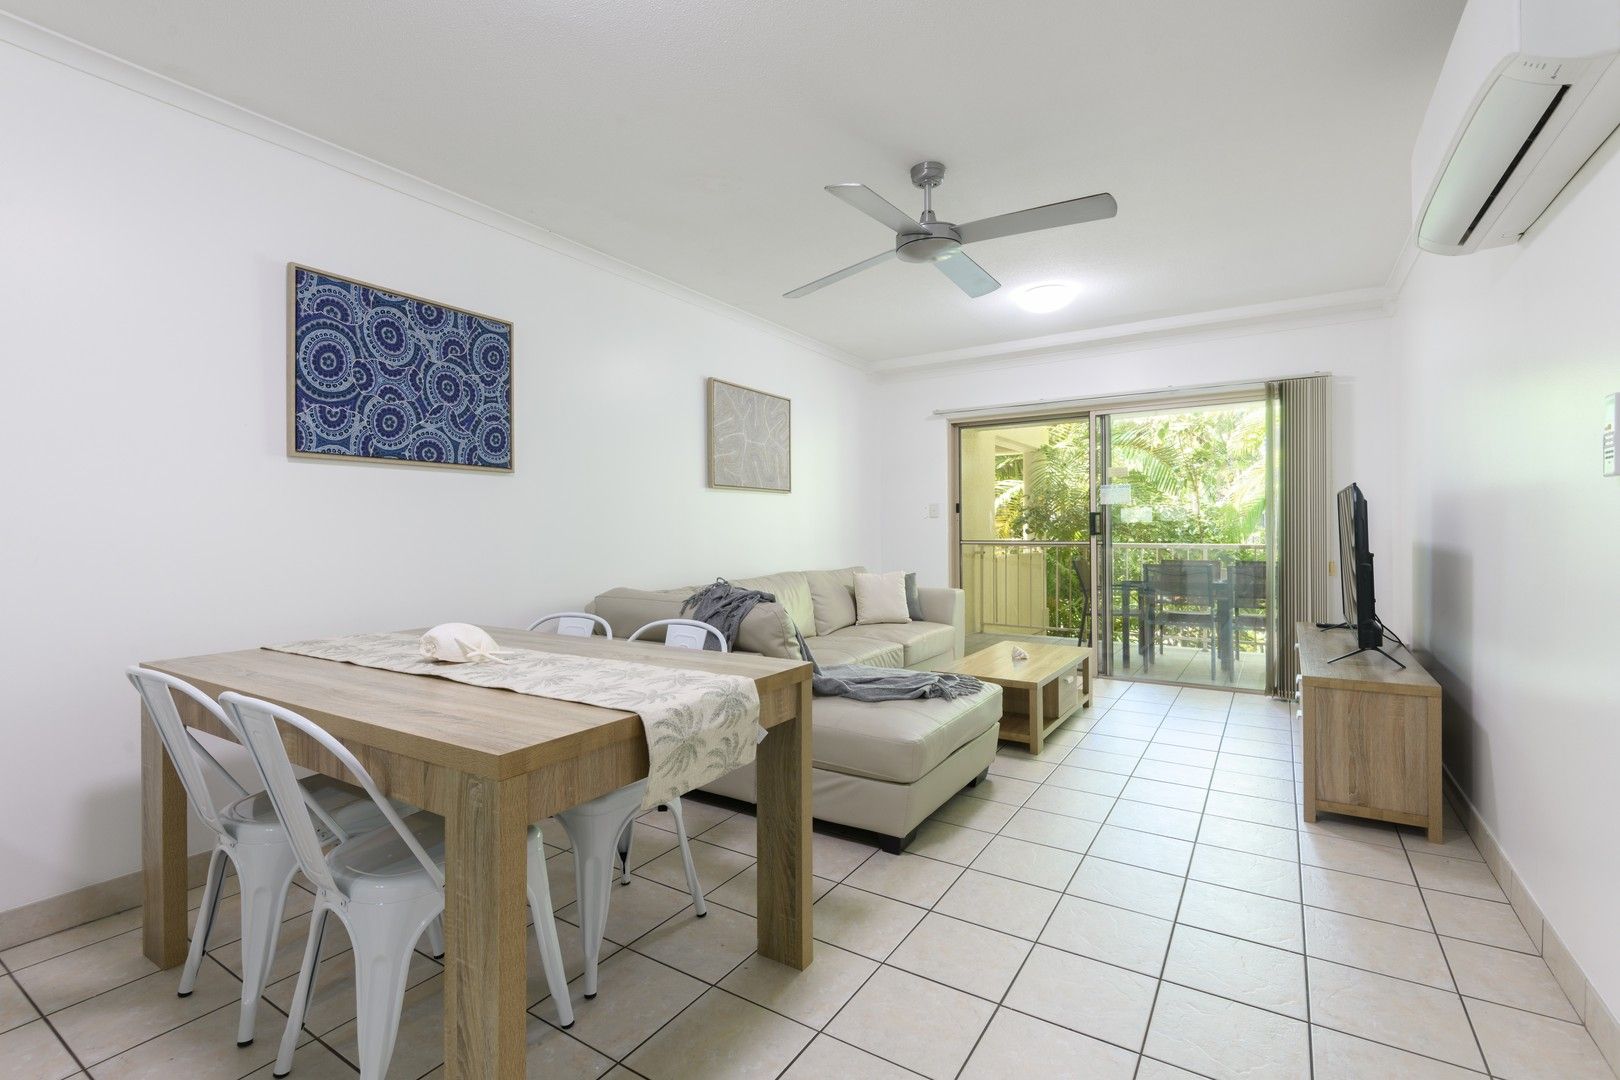 2 bedrooms Apartment / Unit / Flat in 31/11-15 Port Douglas Road PORT DOUGLAS QLD, 4877